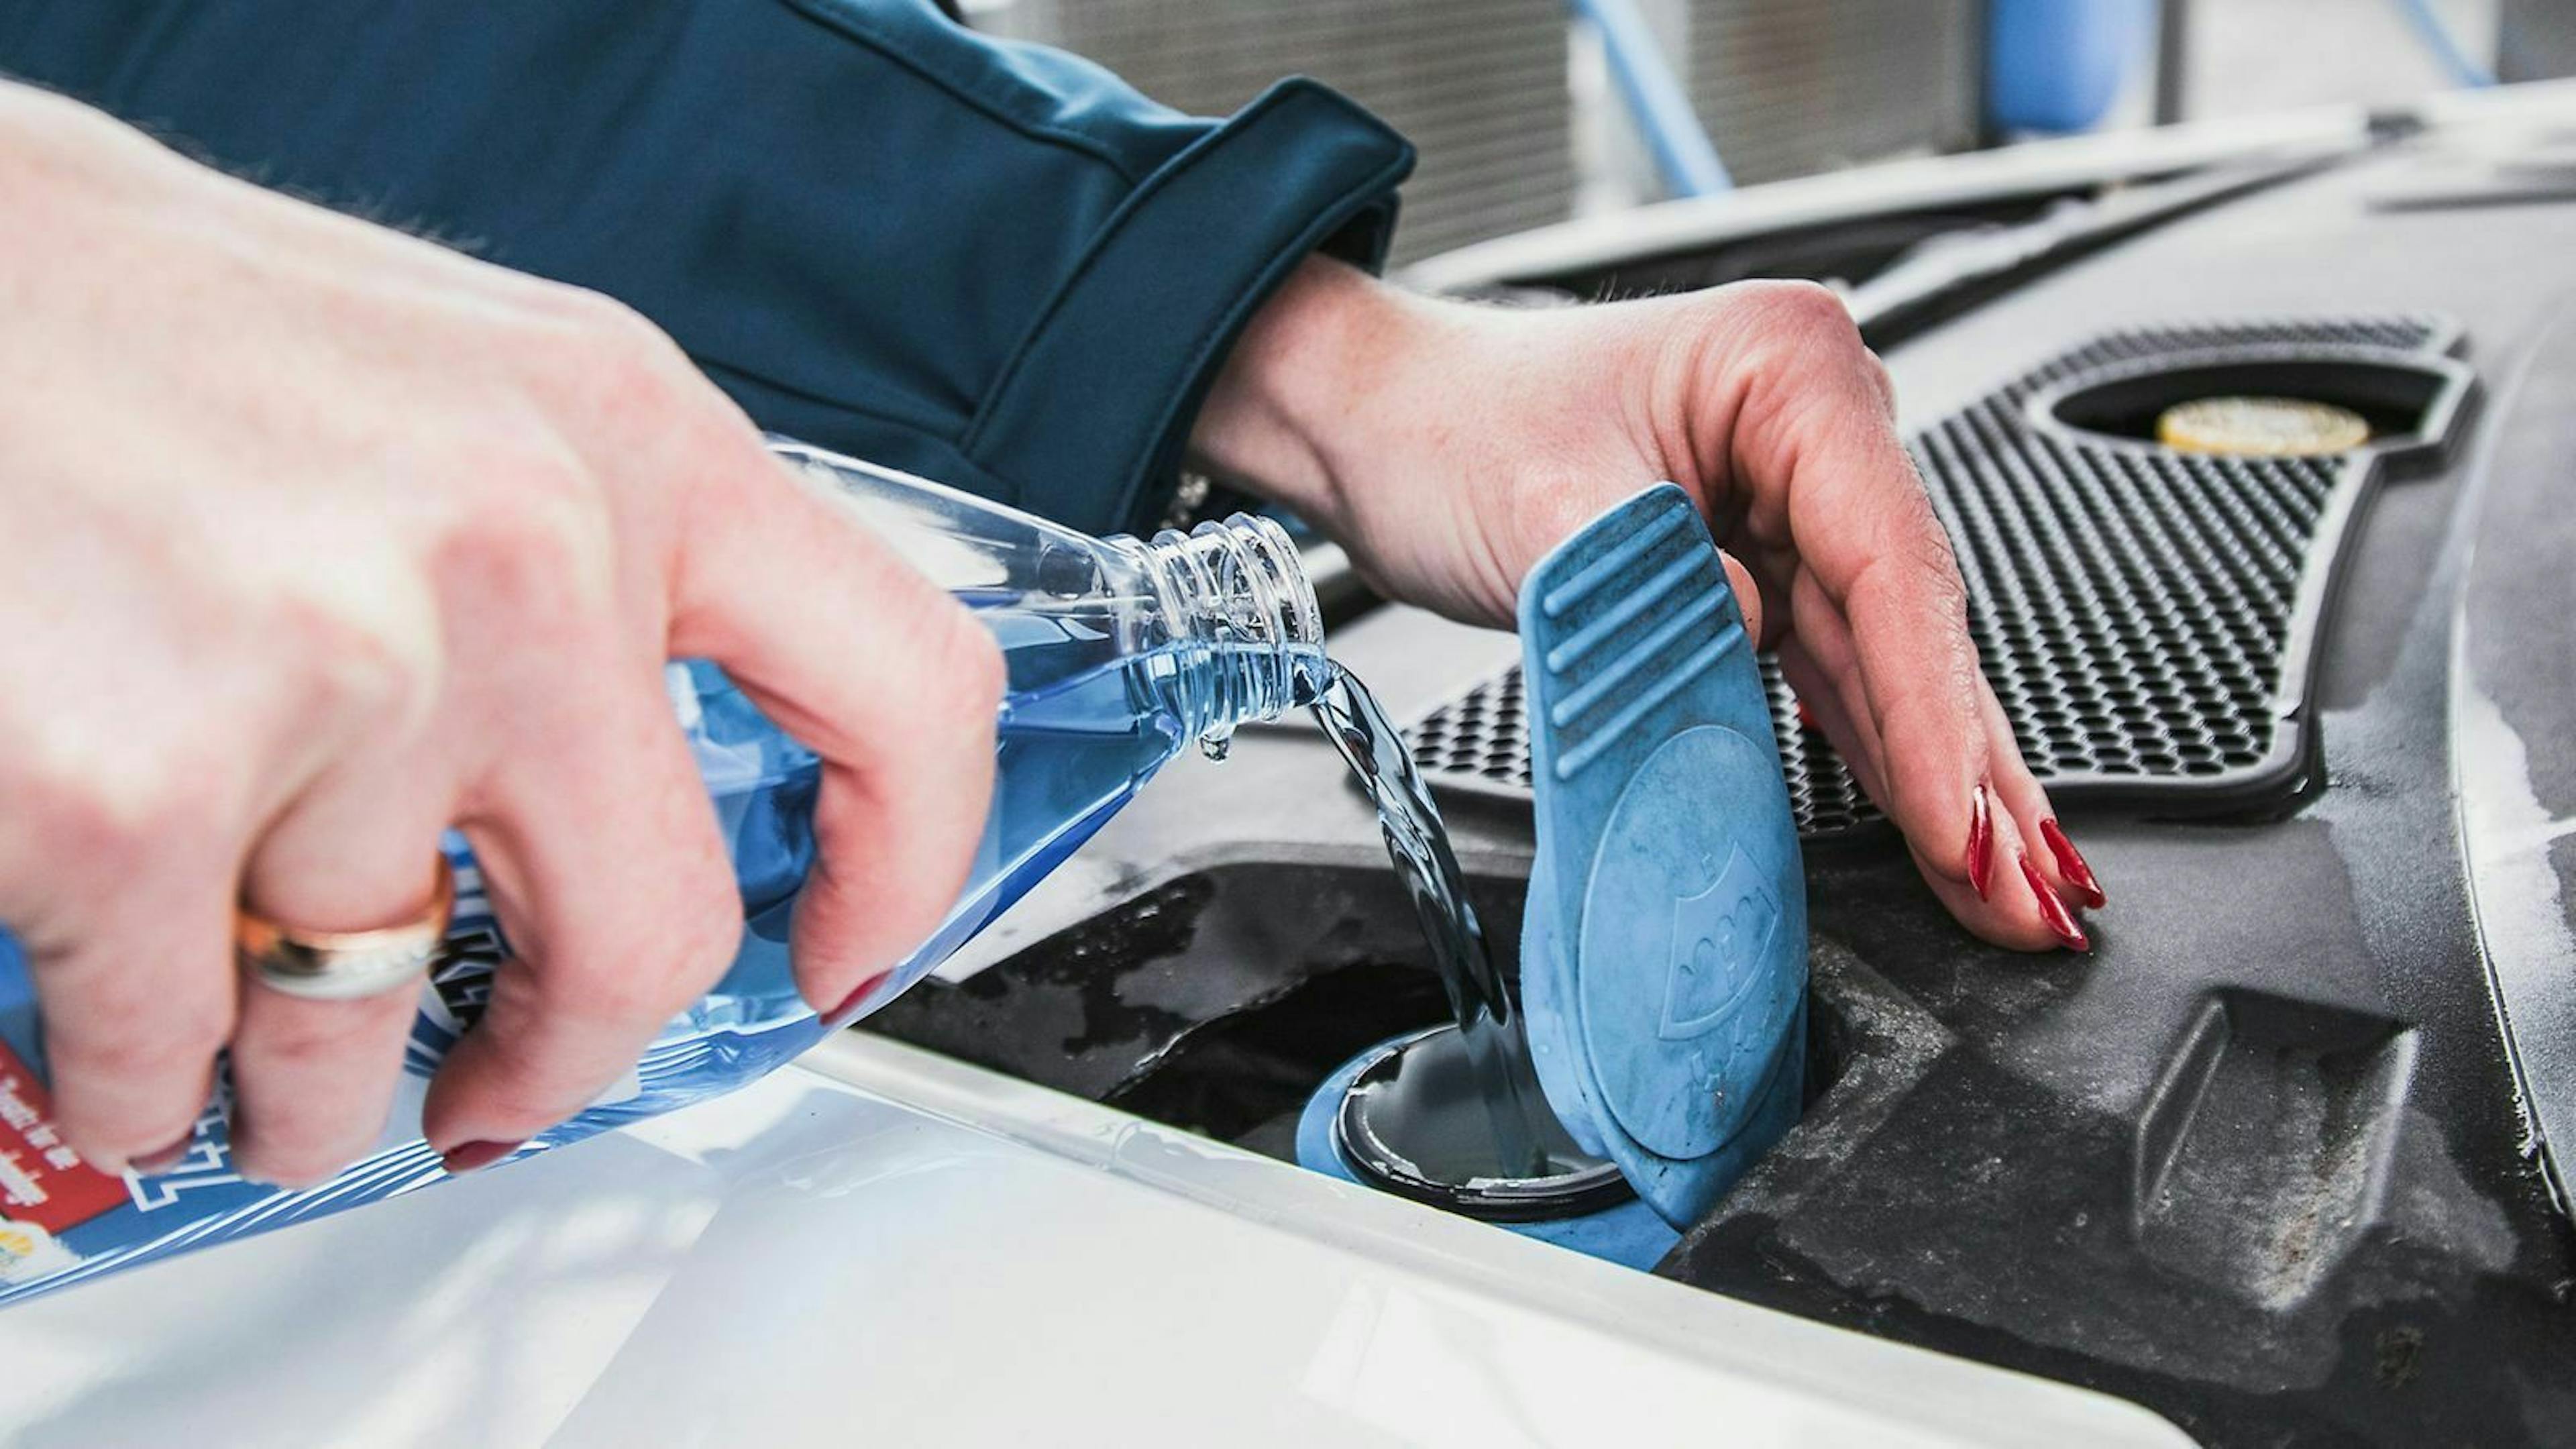 Du solltest regelmäßig die Kühlflüssigkeit im Auto nachfüllen. Das beugt Korrosion vor und dient als Frostschutz.